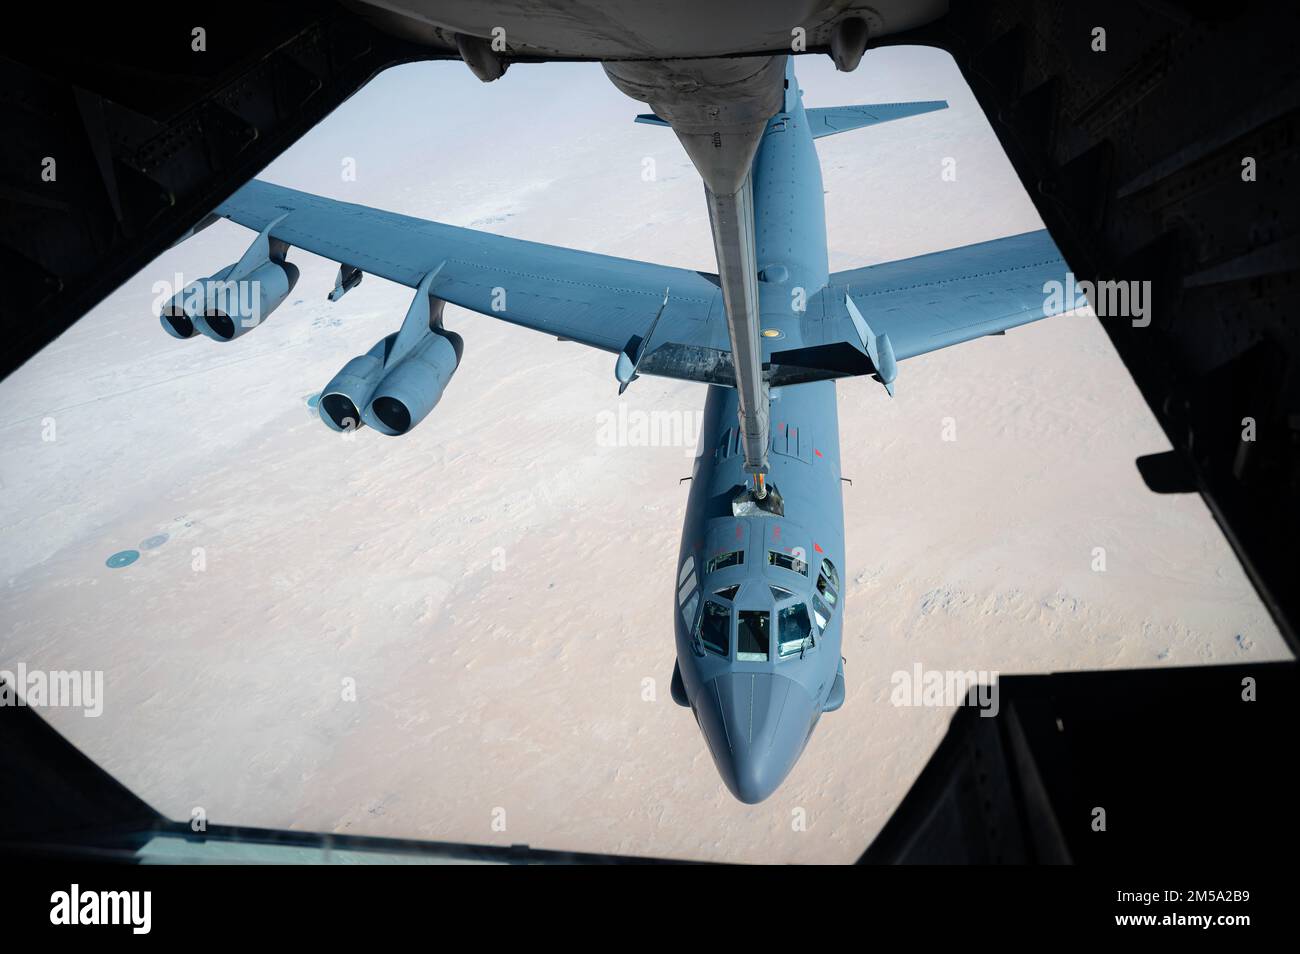 EIN US-AMERIKANISCHER Air Force KC-10 Extender, stationiert auf dem Al Dhafra Air Base, Vereinigte Arabische Emirate, betankt eine B-52H Stratofestung über den USA Verantwortungsgebiet des Zentralkommandos während einer Präsenzpatrouillenmission am 14. Februar 2022. Die B-52 kann große Nutzlasten nuklearer oder konventioneller Präzisionswaffen über extreme Entfernungen liefern und bietet die Möglichkeit, militärische Macht schnell auf die ganze Welt zu projizieren. Stockfoto